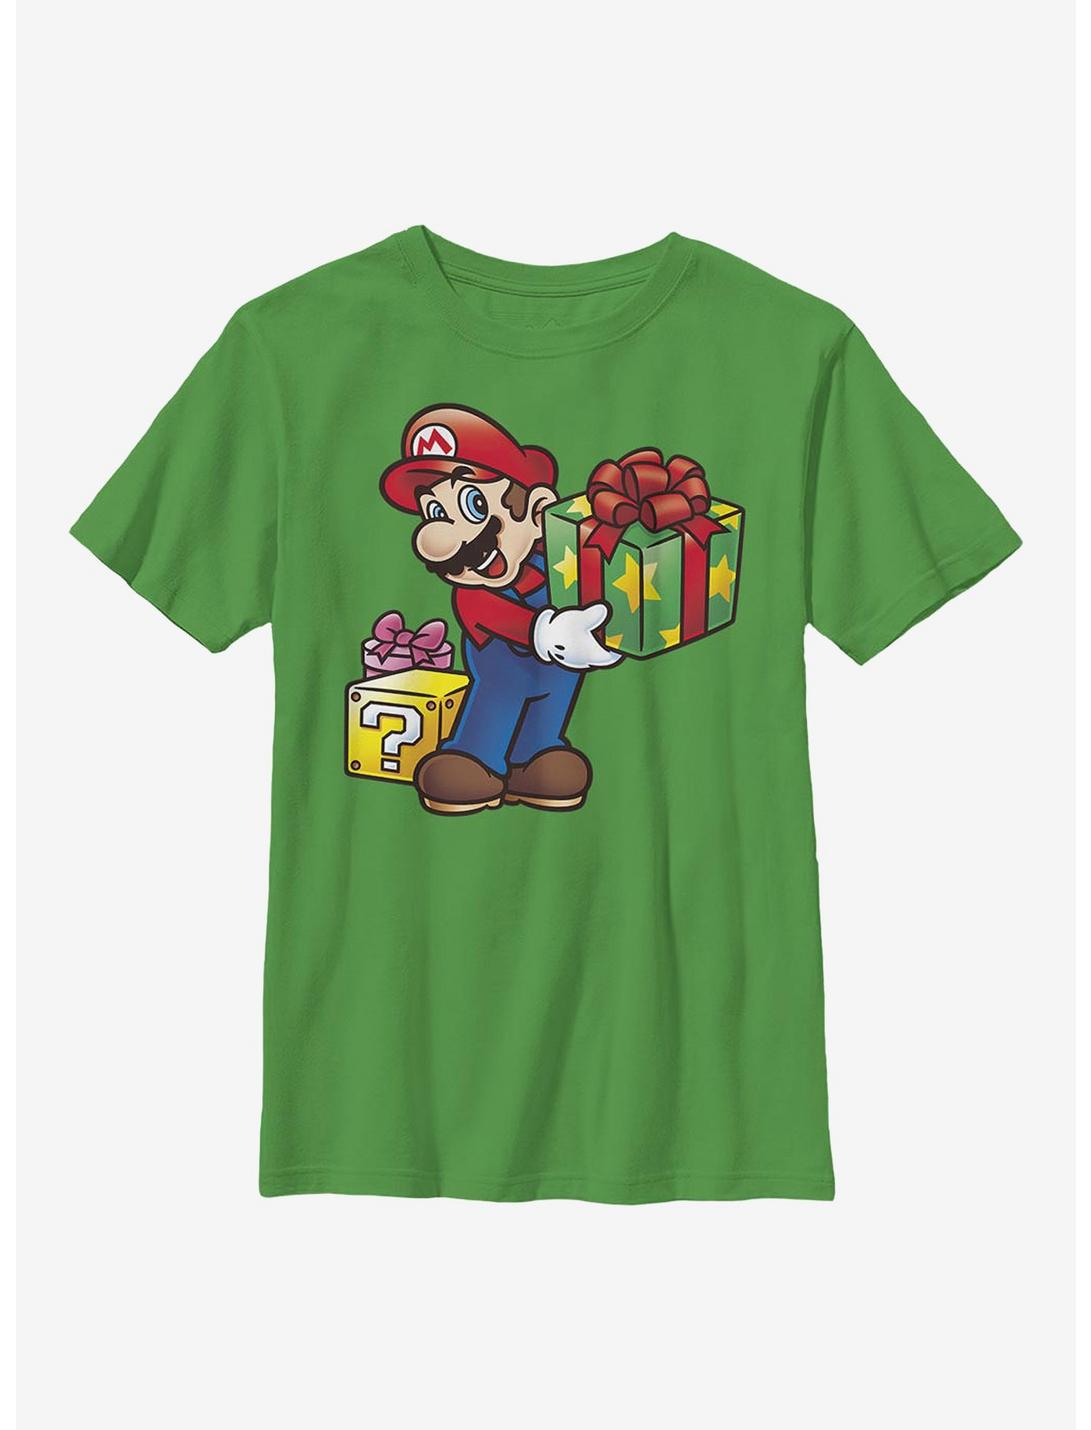 Super Mario Christmas Gifts Youth T-Shirt, KELLY, hi-res